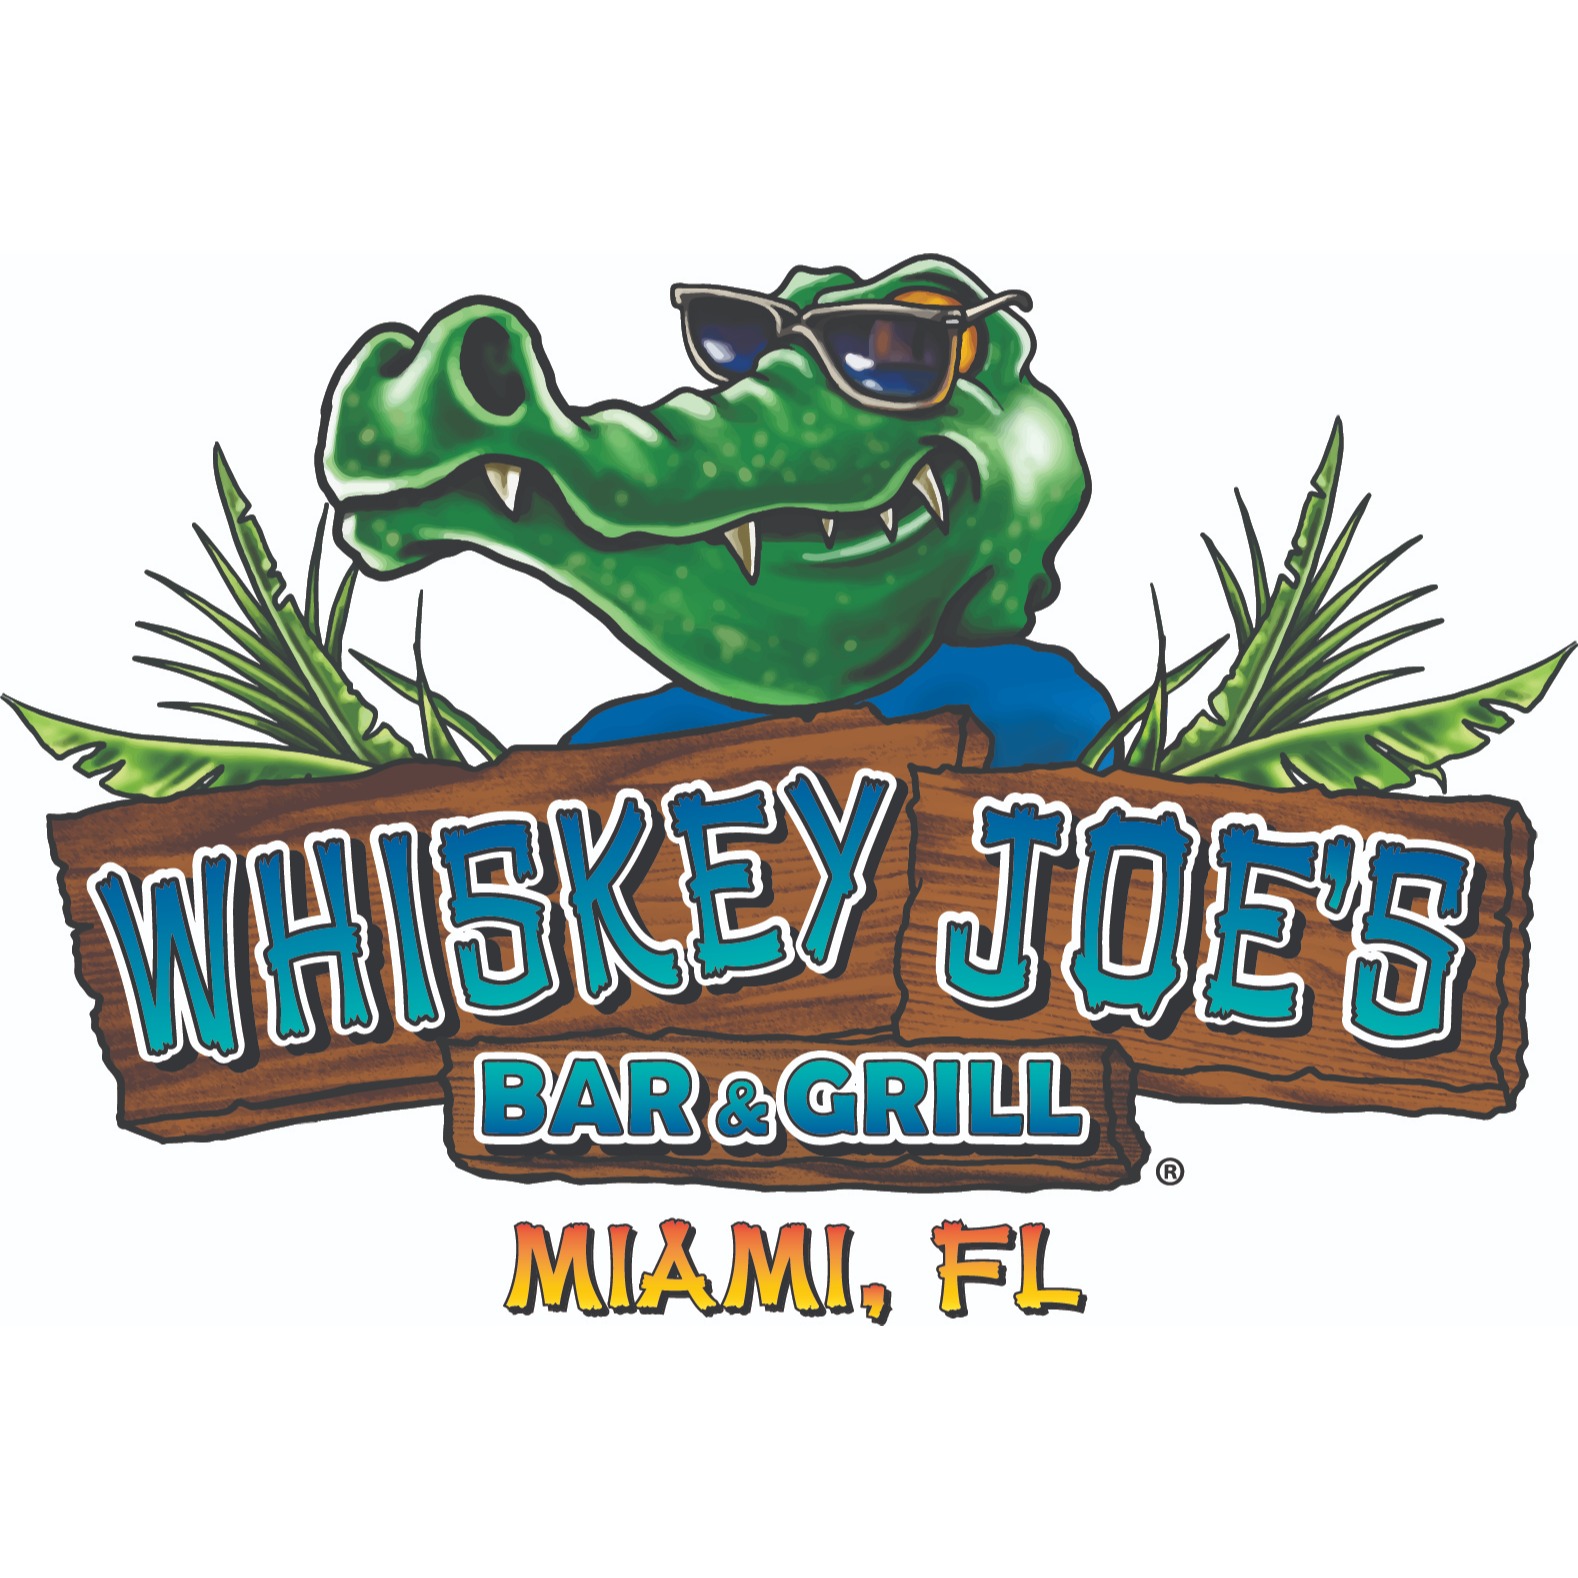 Whiskey Joe's Bar & Grill - Miami